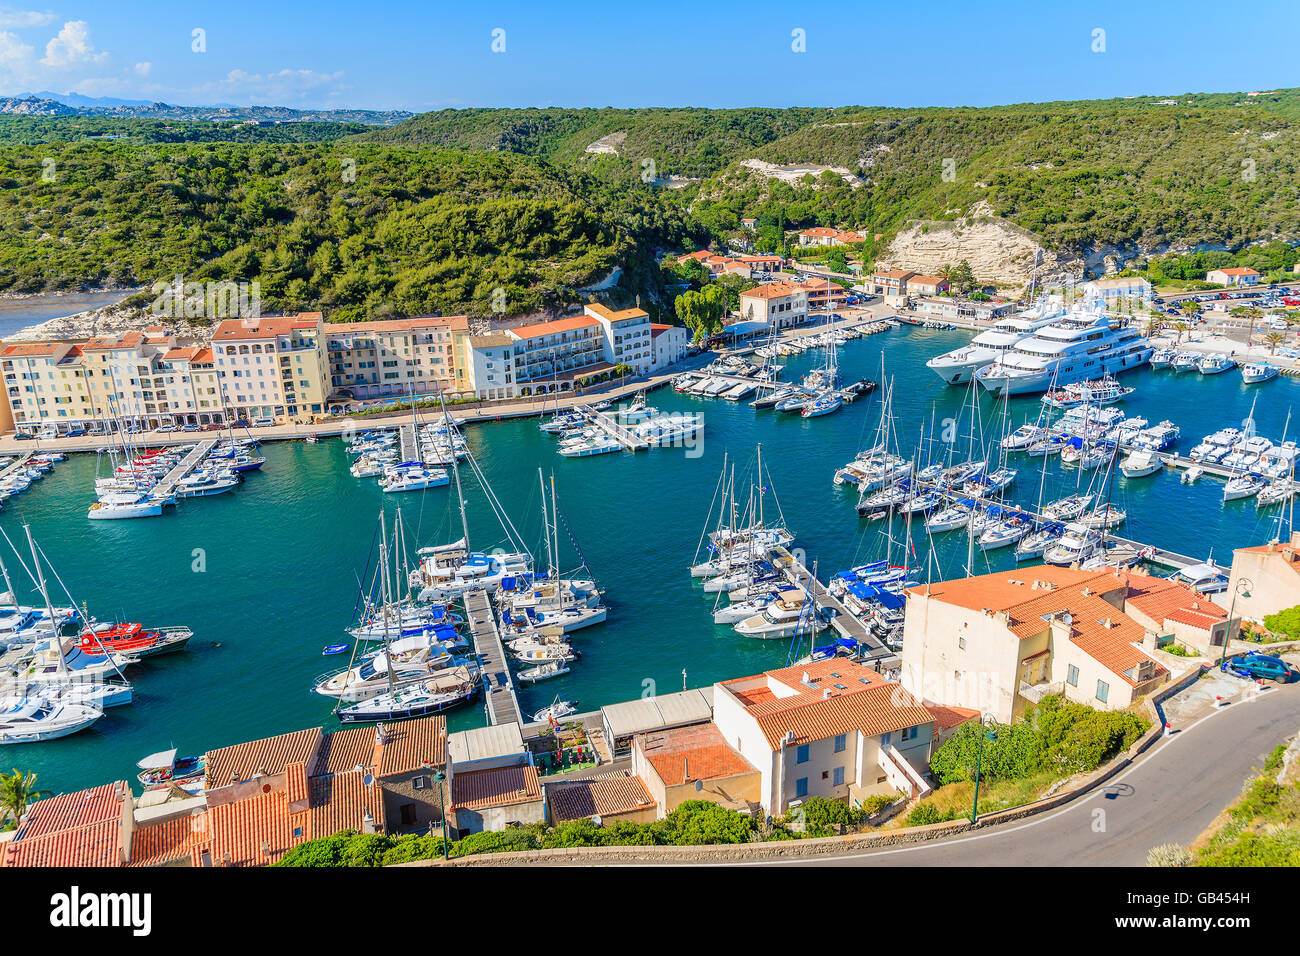 PORT DE BONIFACIO, CORSE - JUN 24, 2015 : Avis de Bonifacio port avec ses maisons colorées et bateaux, Corse, France. Banque D'Images